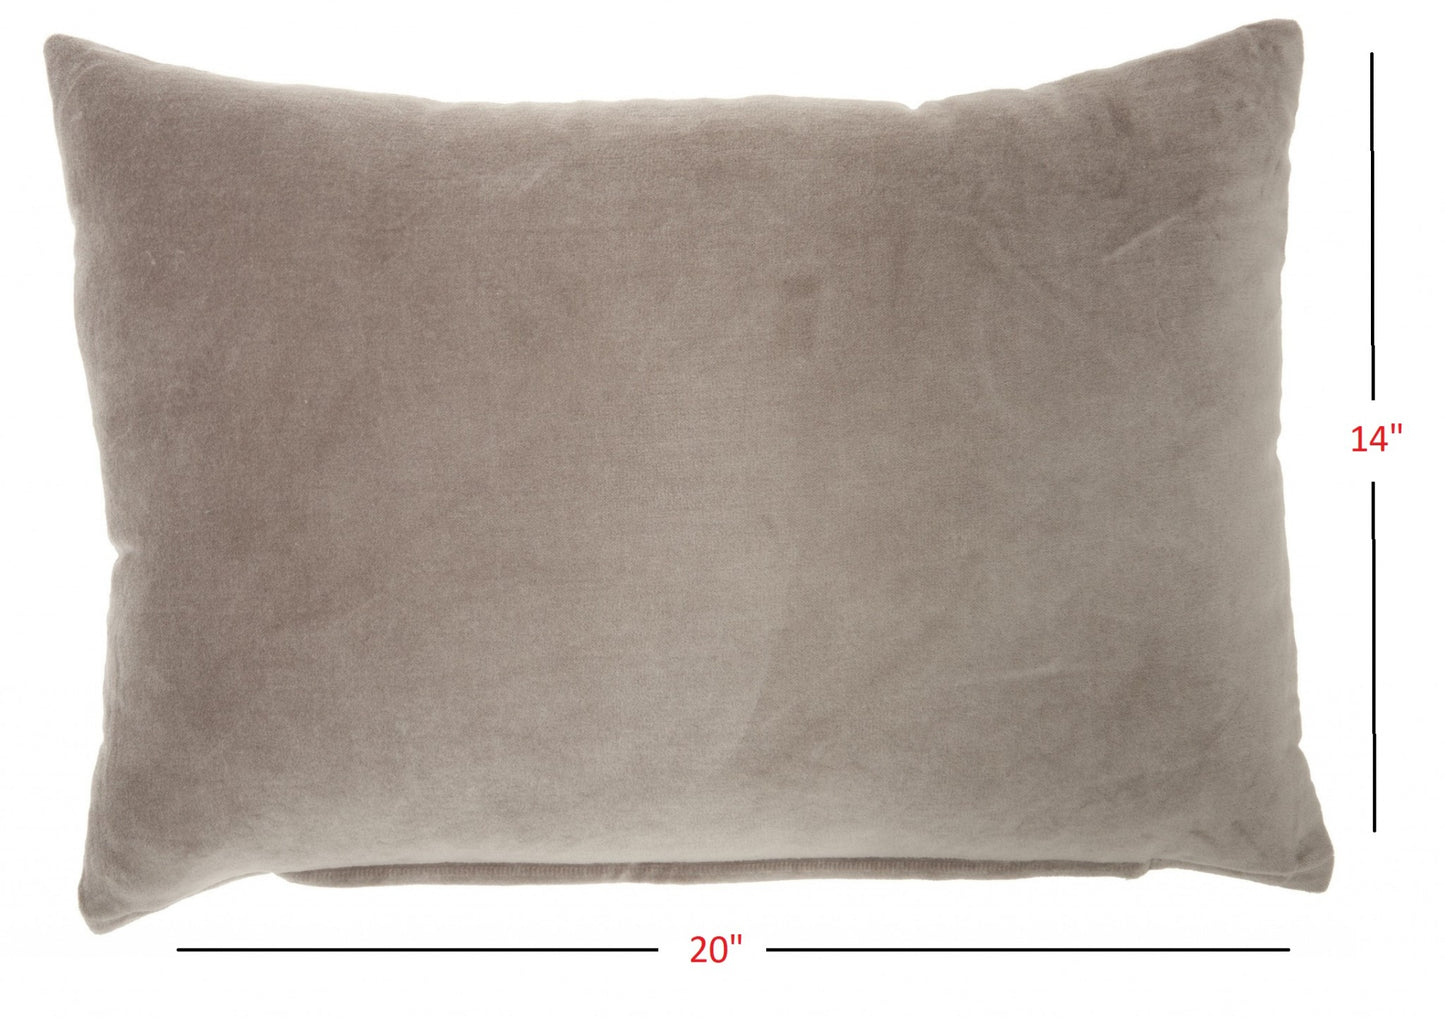 14" X 20" Taupe Cotton Throw Pillow